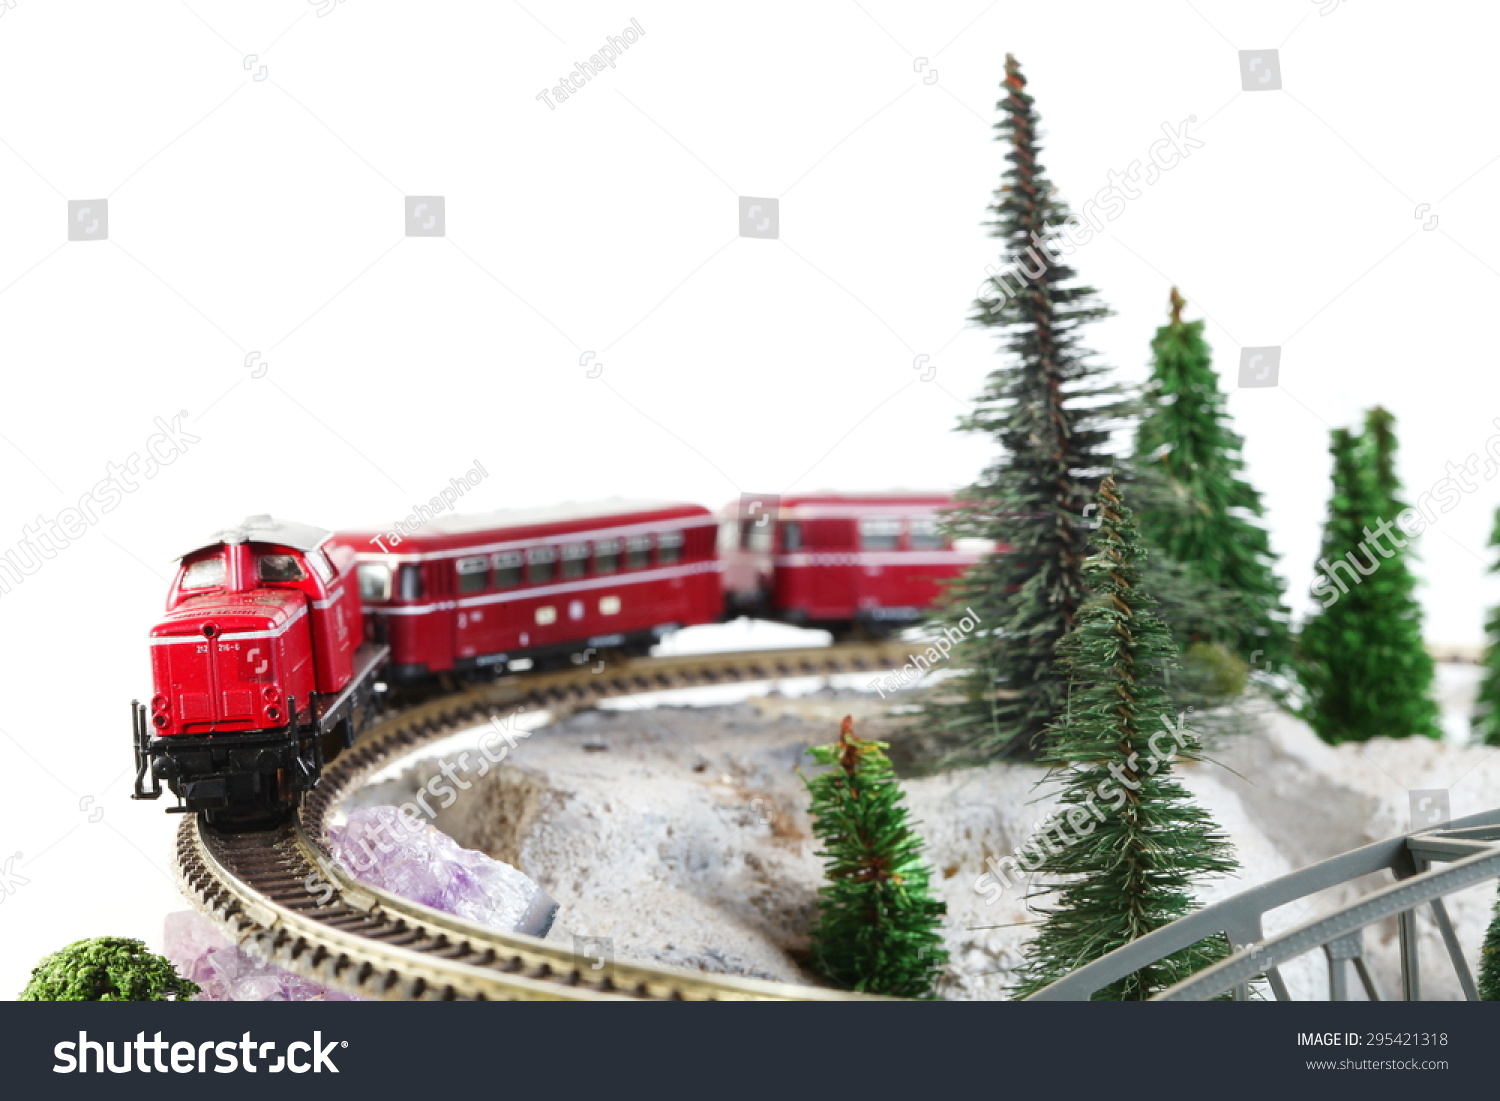 铁路小型布局模型代表了模型的缩影概念相关概